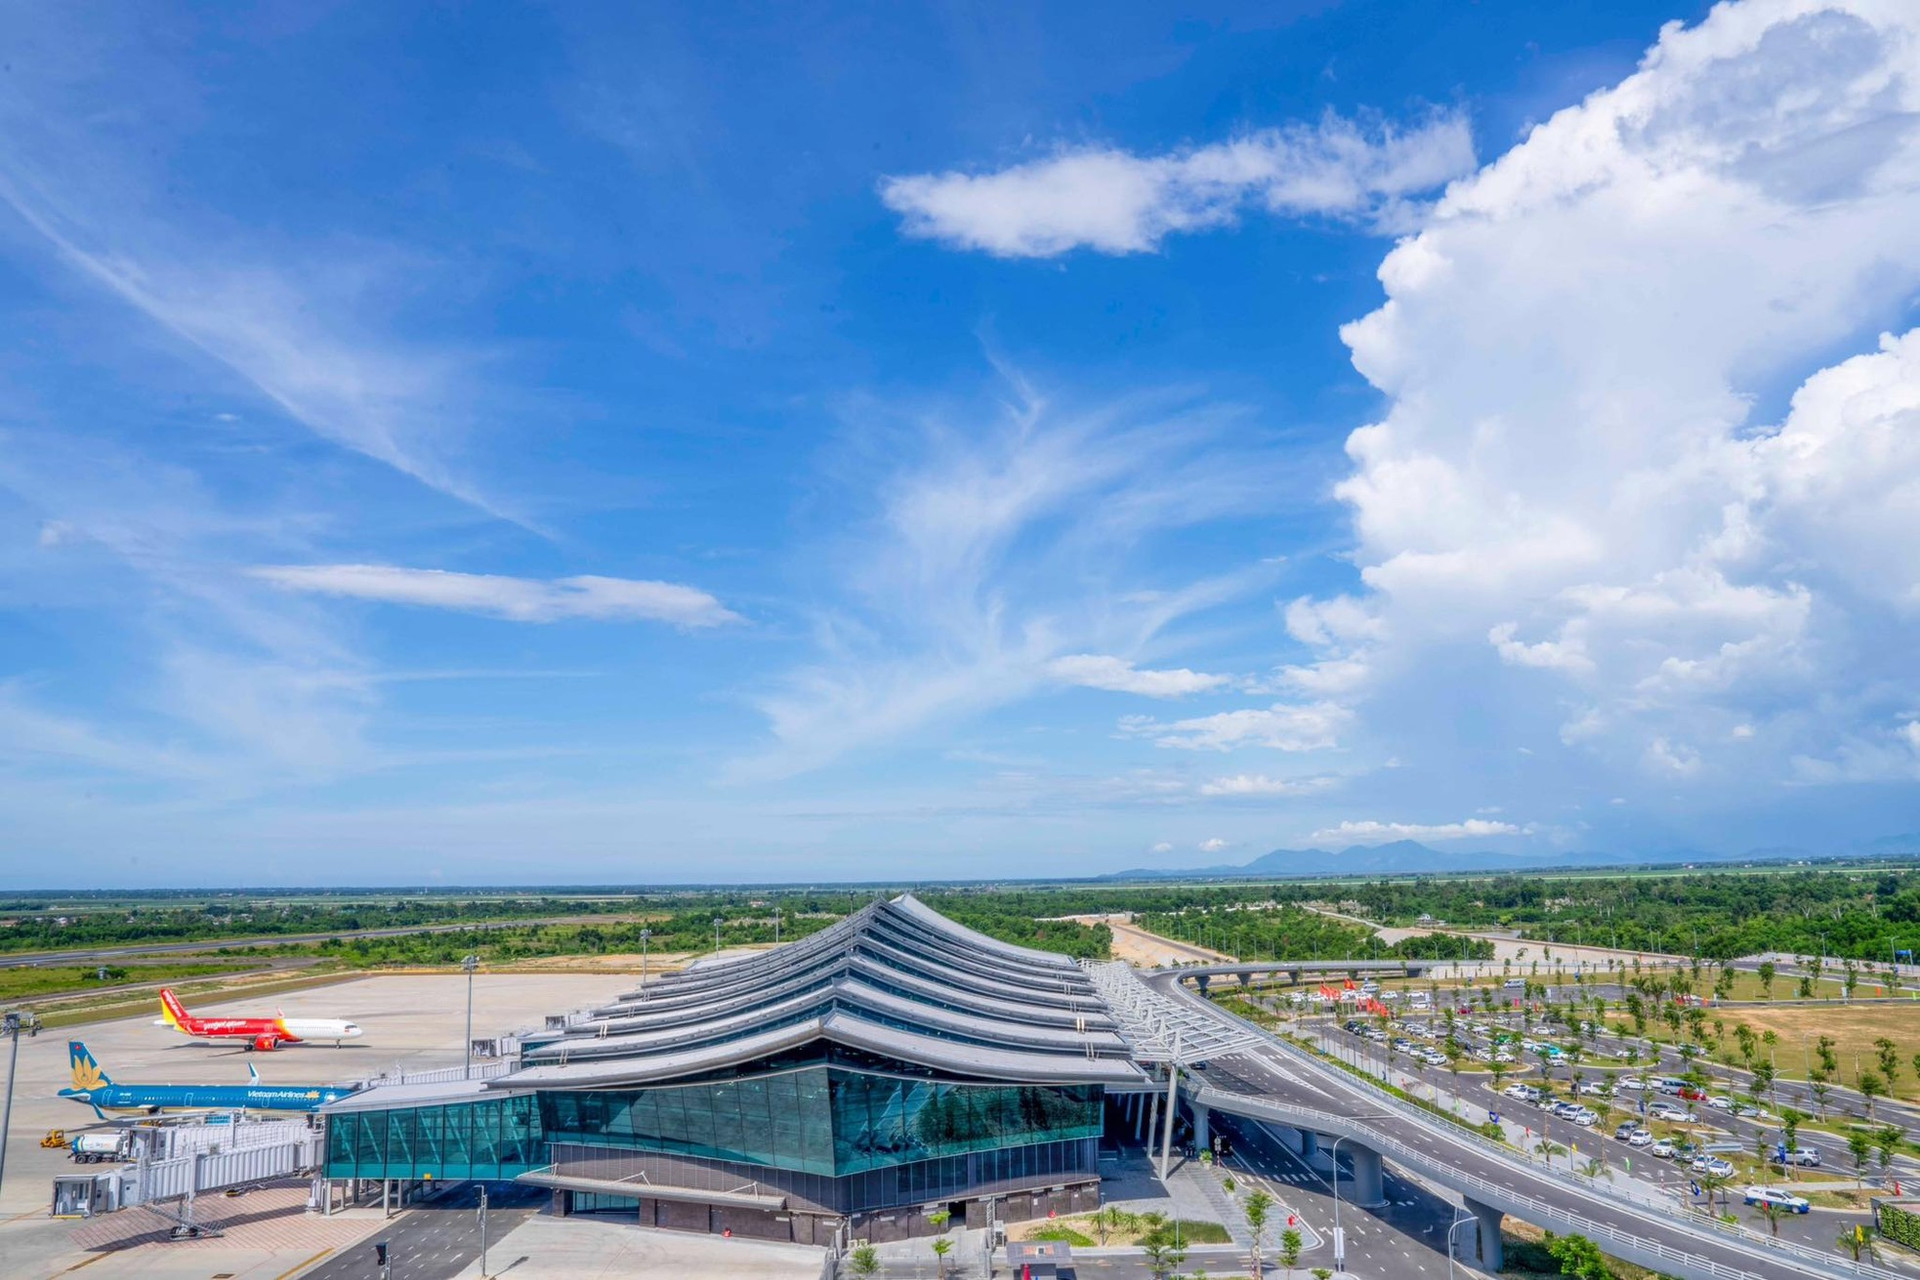 Ấn tượng hình ảnh kiến trúc sân bay 'độc nhất vô nhị' ở Việt Nam ảnh 2